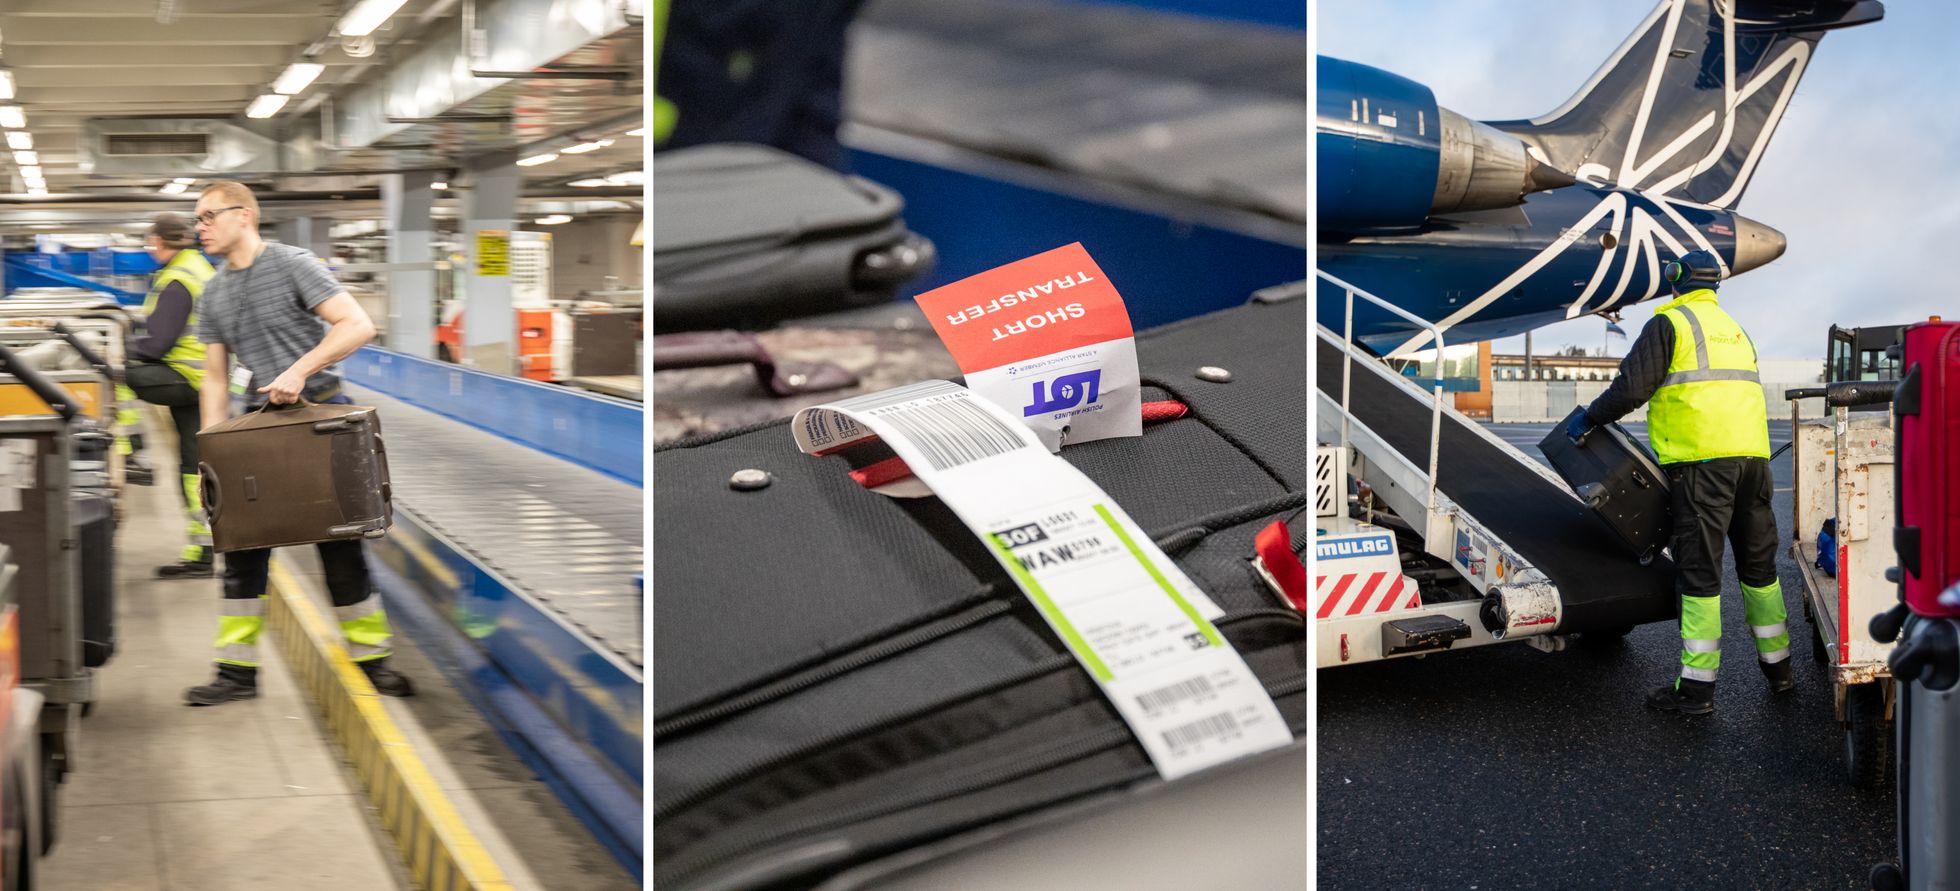 Если между двумя рейсами слишком короткий промежуток времени, на багаж наклеивается пометка «Short transfer».